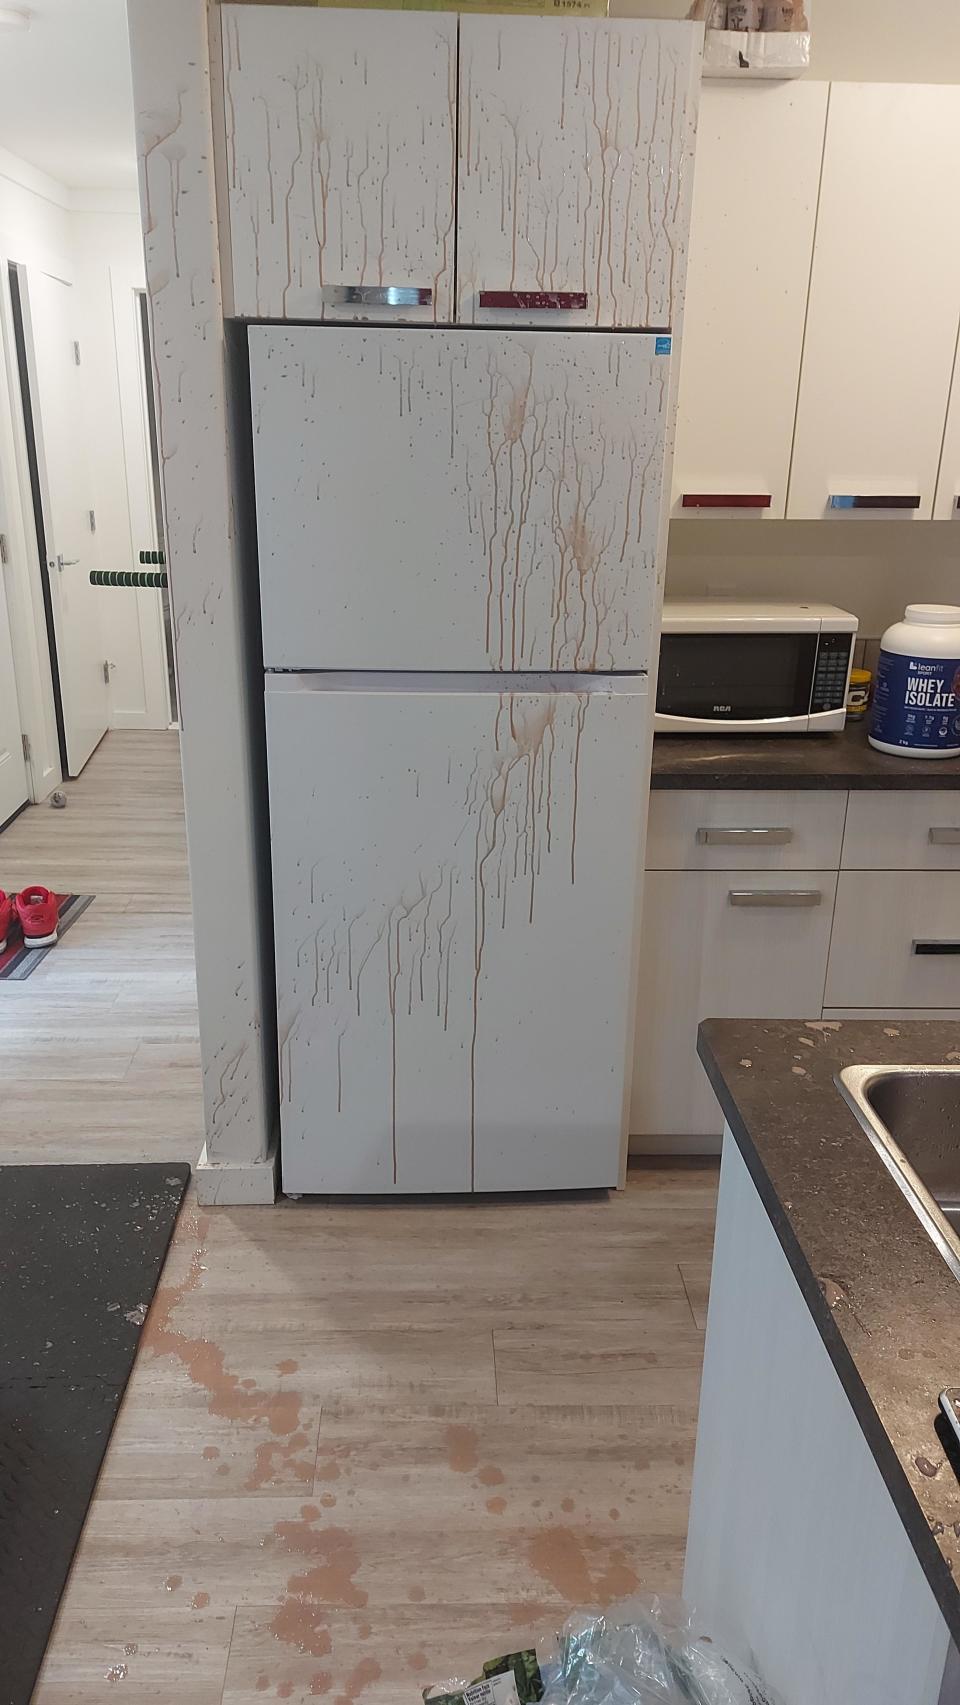 shake splattered all over the floor and fridge